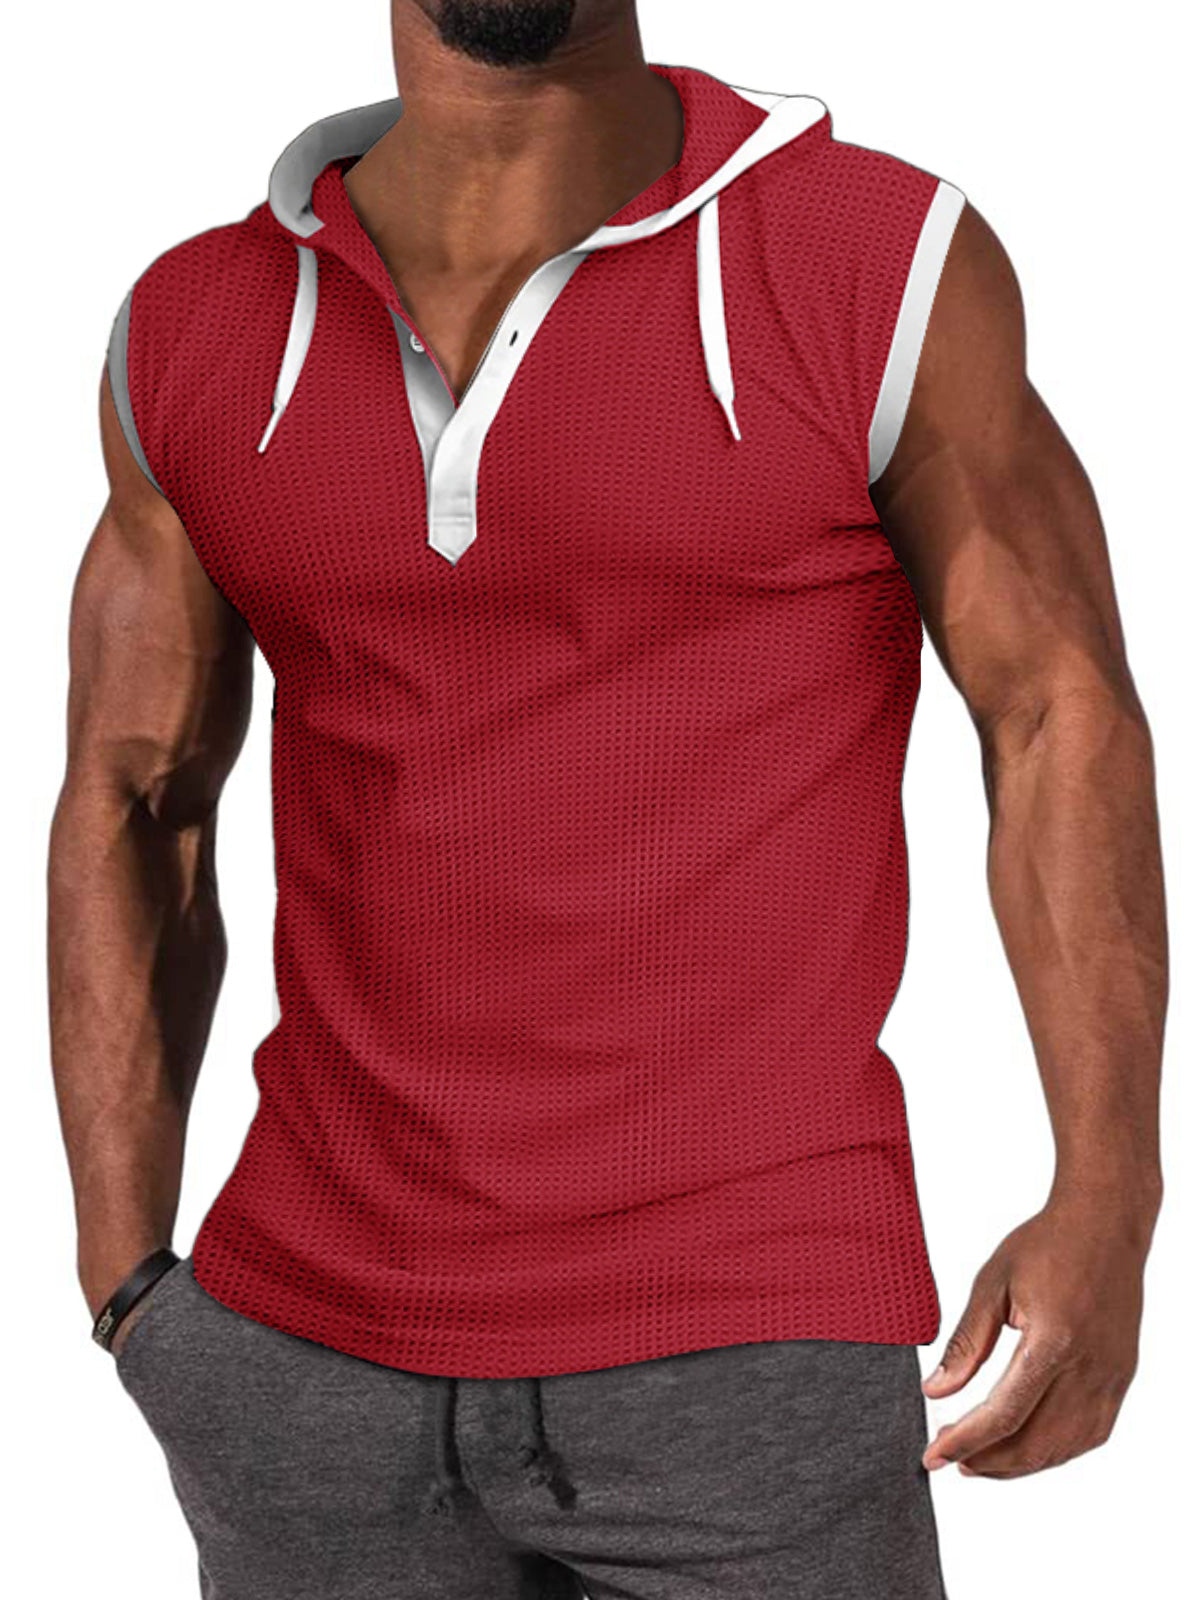 Men's Basic Casual Hooded Sleeveless T-Shirt Vest